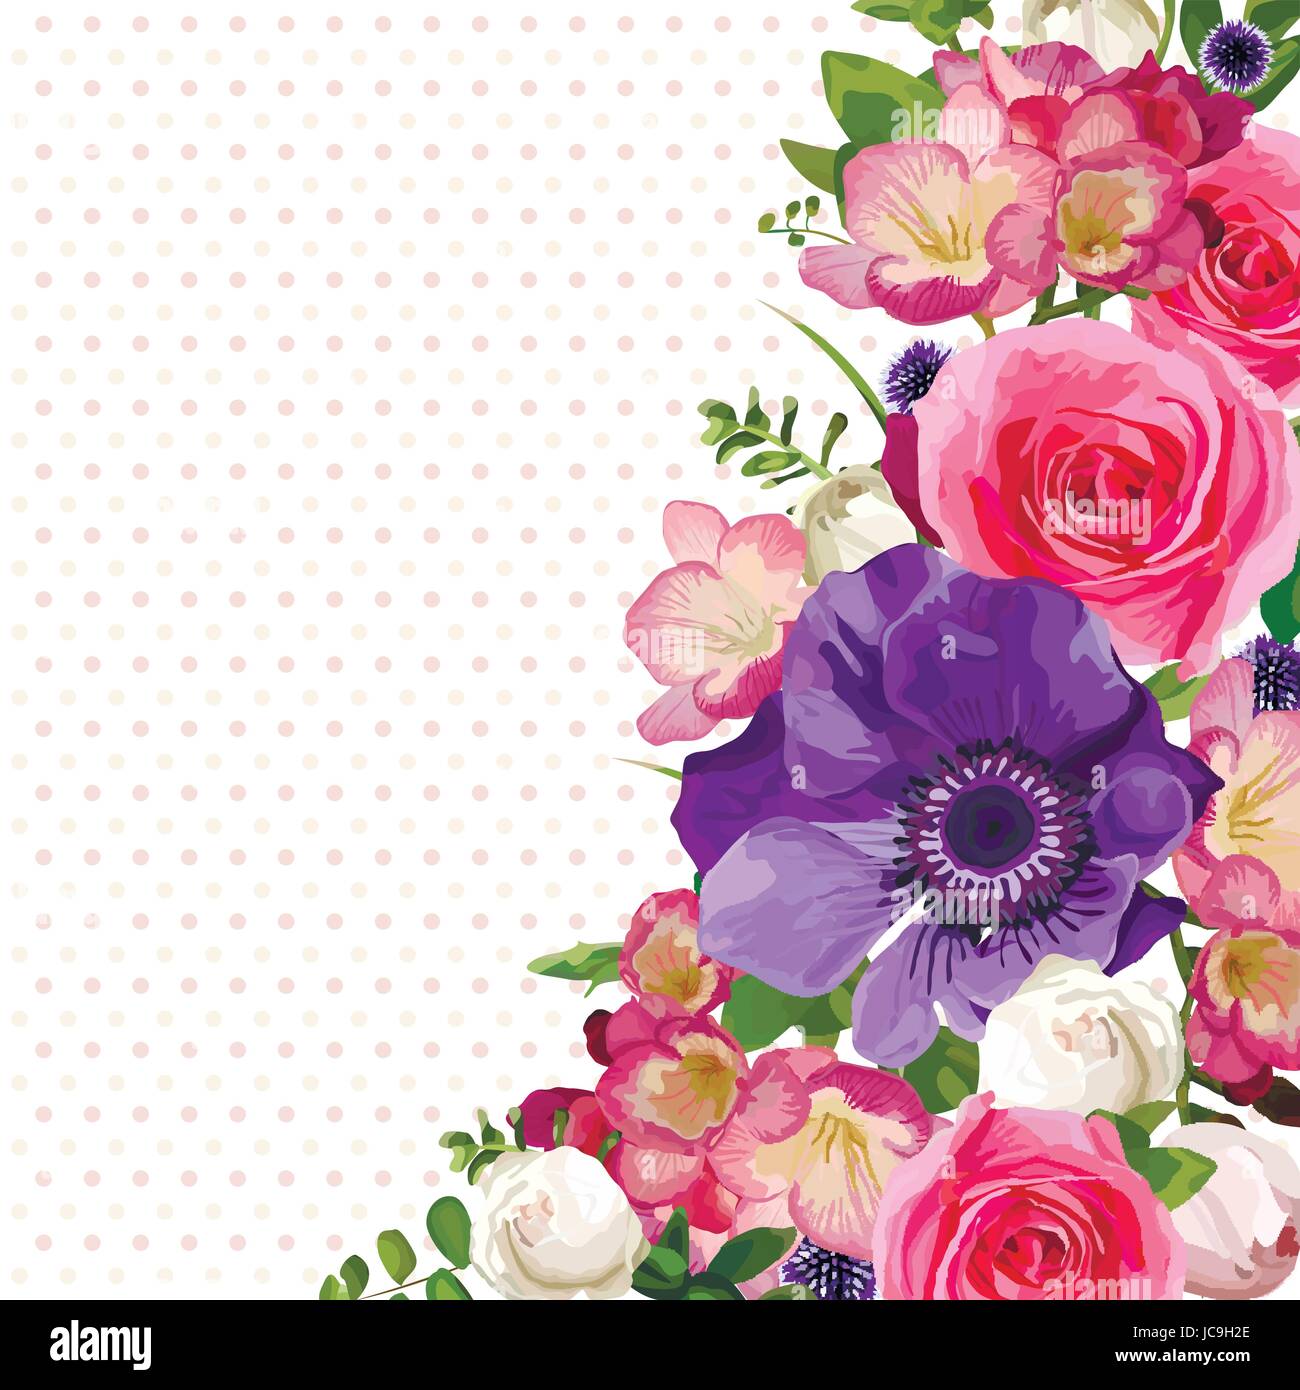 Blume Blumen heißen rosa Rose Anemone Distel lässt schöne schönen Frühling Sommer Bouquet Vektor-Illustration. Ansicht von oben eckig elegante Aquarell Stock Vektor